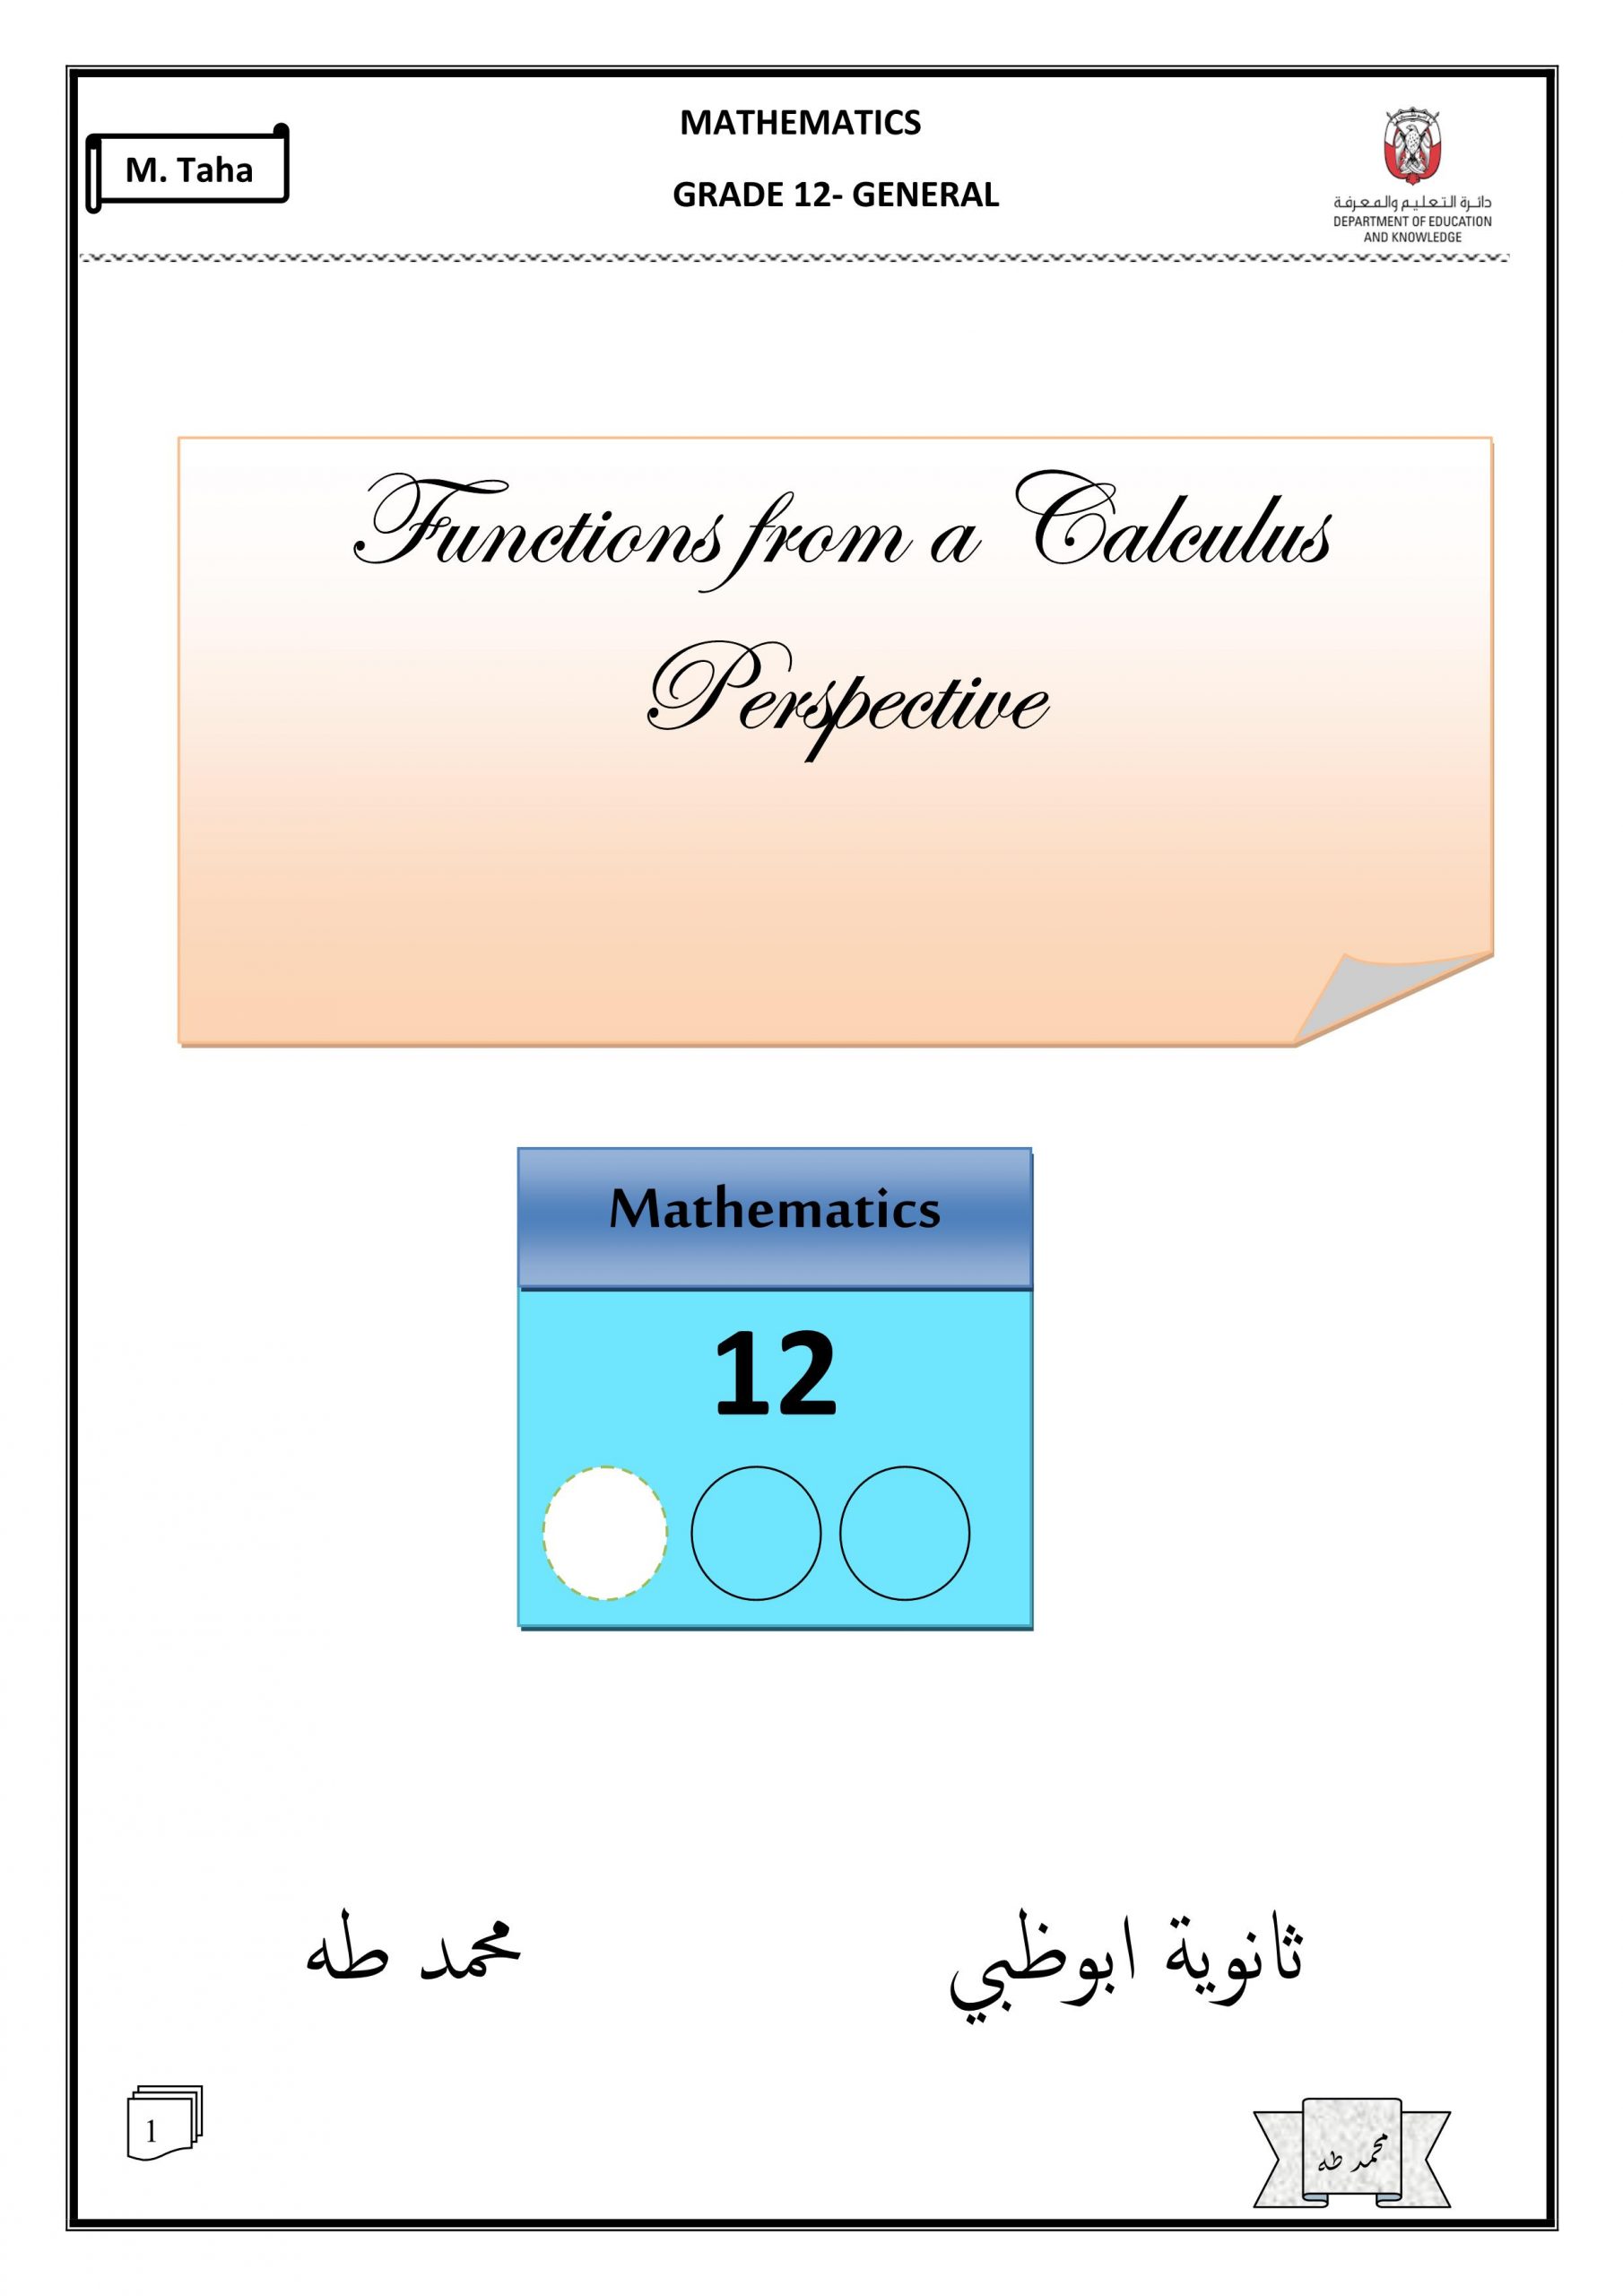 اوراق عمل مراجعة بالانجليزي اللصف الثاني عشر عام مادة الرياضيات المتكاملة